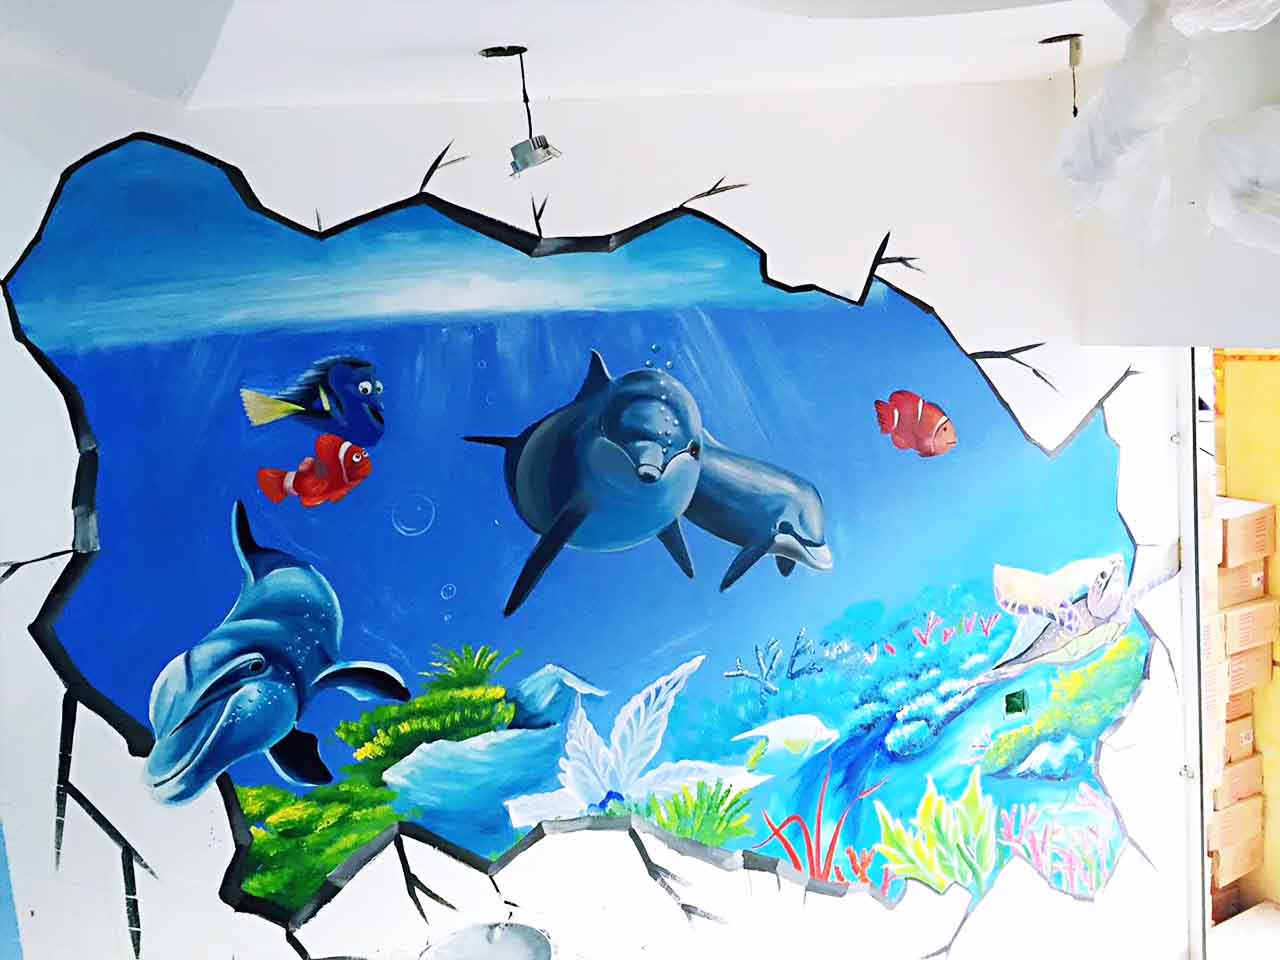 幼儿校园动物园游乐场卡通3D墙绘壁画彩绘涂鸦手绘成都澜泉文化